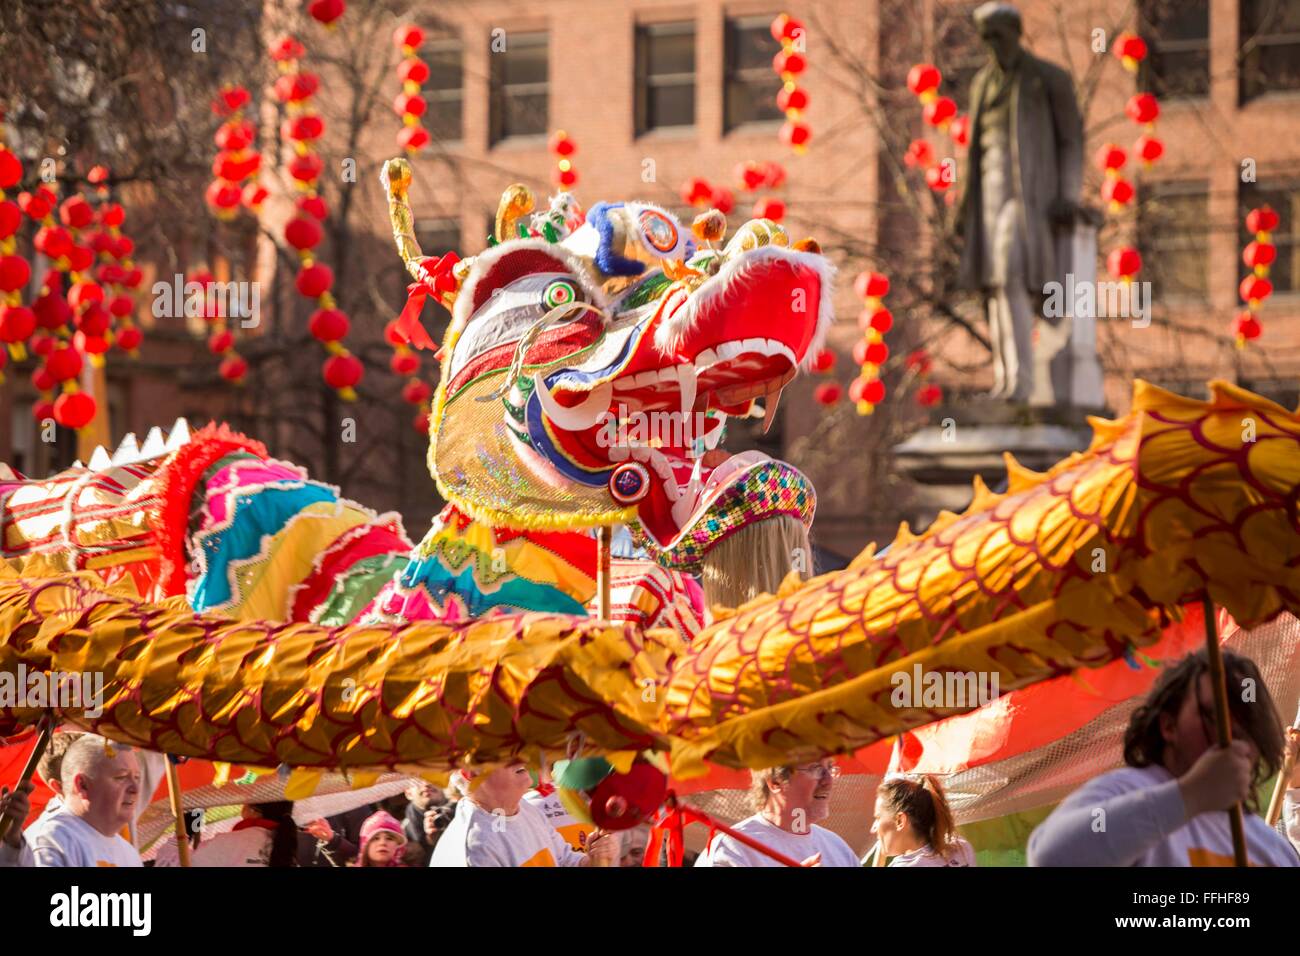 Manchester célèbre le Nouvel An chinois aujourd'hui (dimanche 7 février 2016) avec un défilé du dragon et la danse traditionnelle à travers la ville Banque D'Images